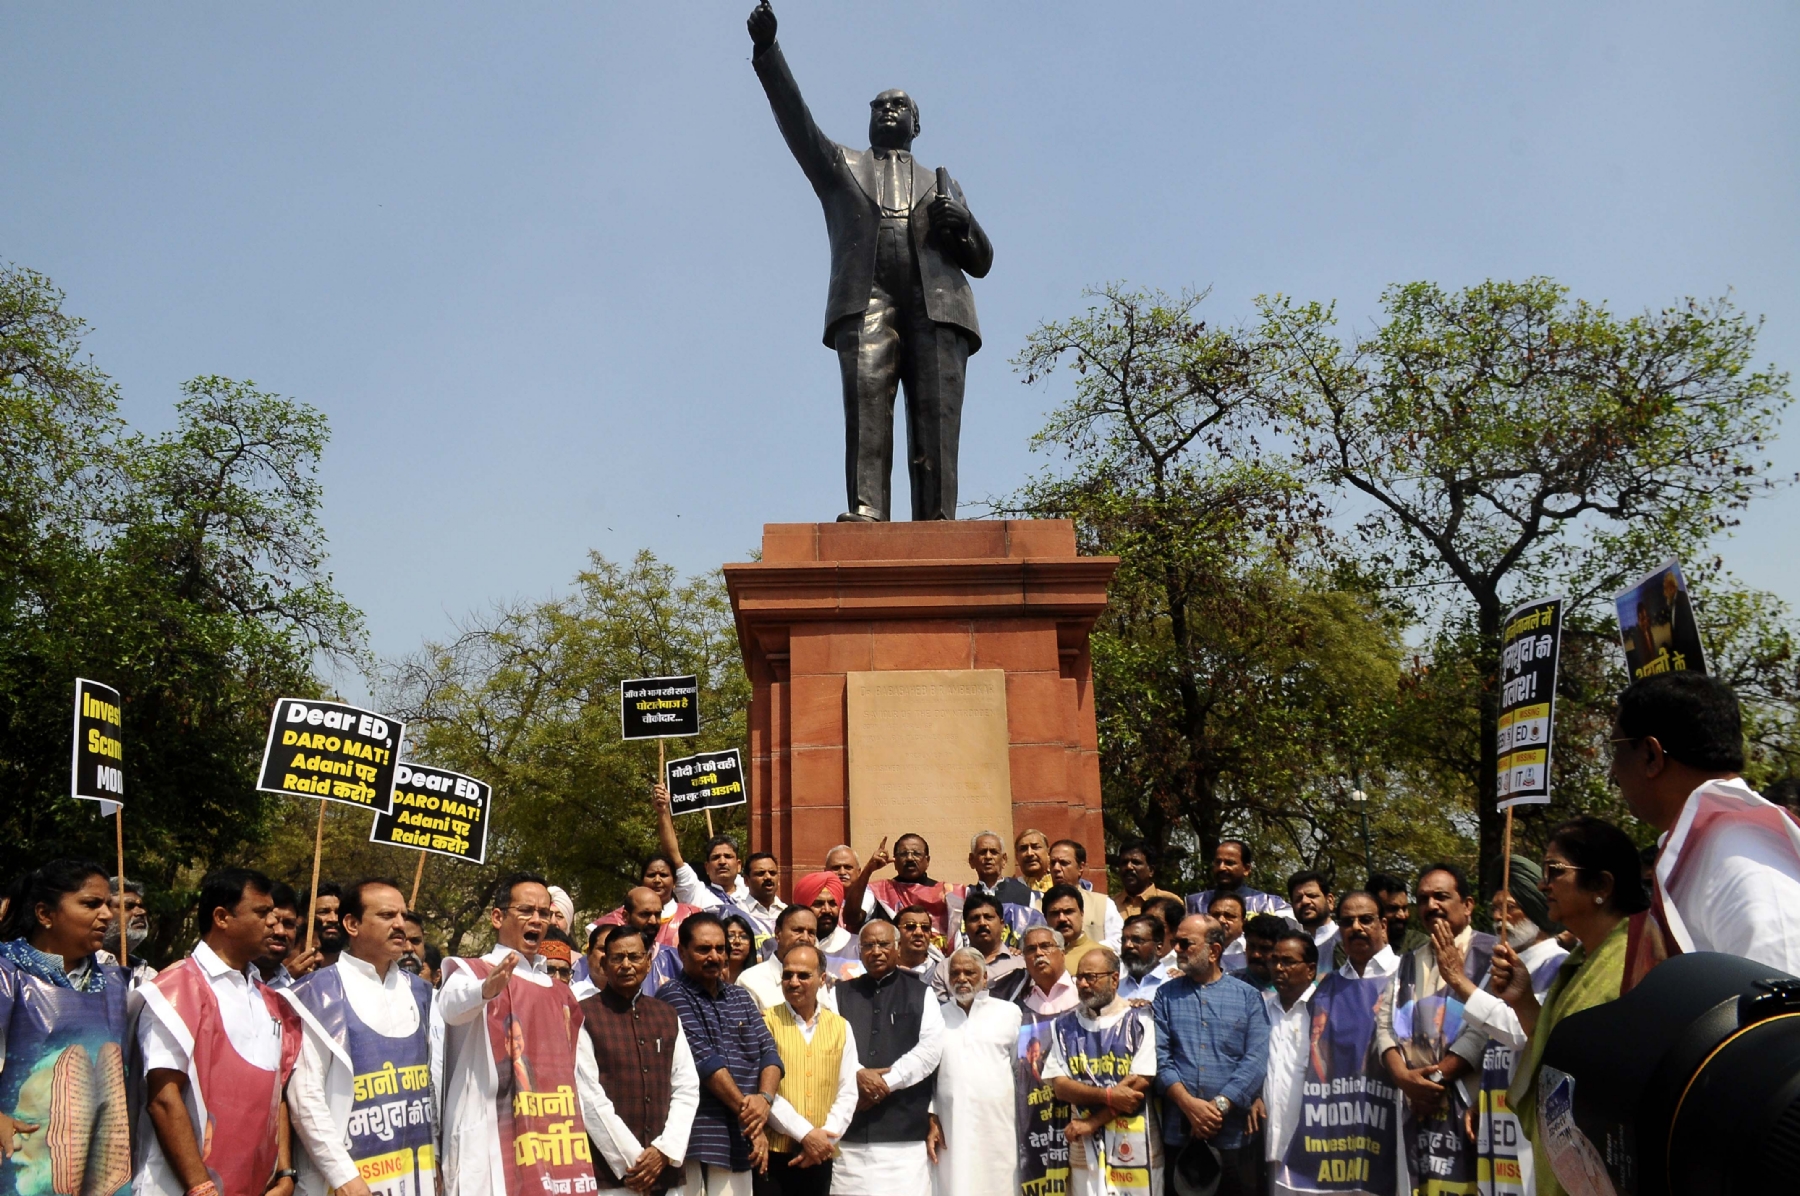 नई दिल्ली में गुरुवार 23 मार्च को संसद भवन परिसर में विपक्षी सांसदों ने बाबासाहेब अंबेडकर की प्रतिमा के पास अडानी विवाद को लेकर किया विरोध प्रदर्शन। हिन्दुस्थान समाचार/ फोटो गणेश बिष्ट 